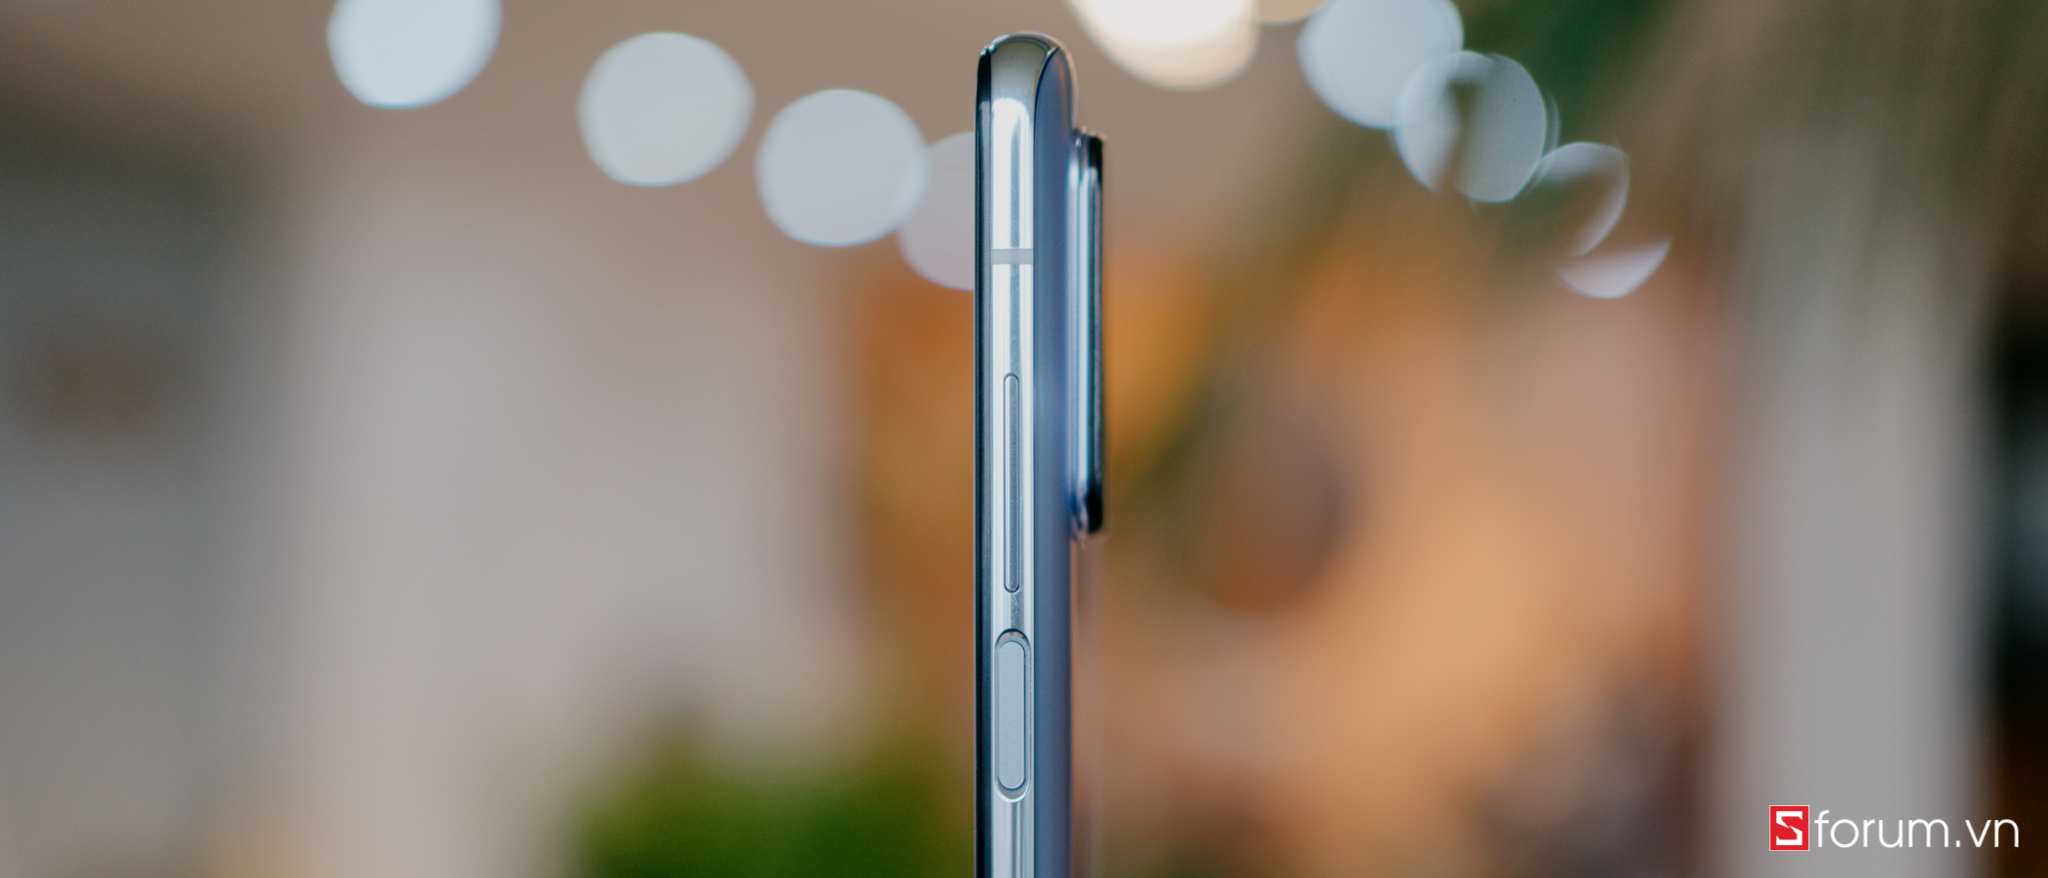 Sforum - Trang thông tin công nghệ mới nhất DSC03525 Trên tay Xiaomi Mi 10T Pro: Smartphone hot nhất phân khúc cận cao cấp! 